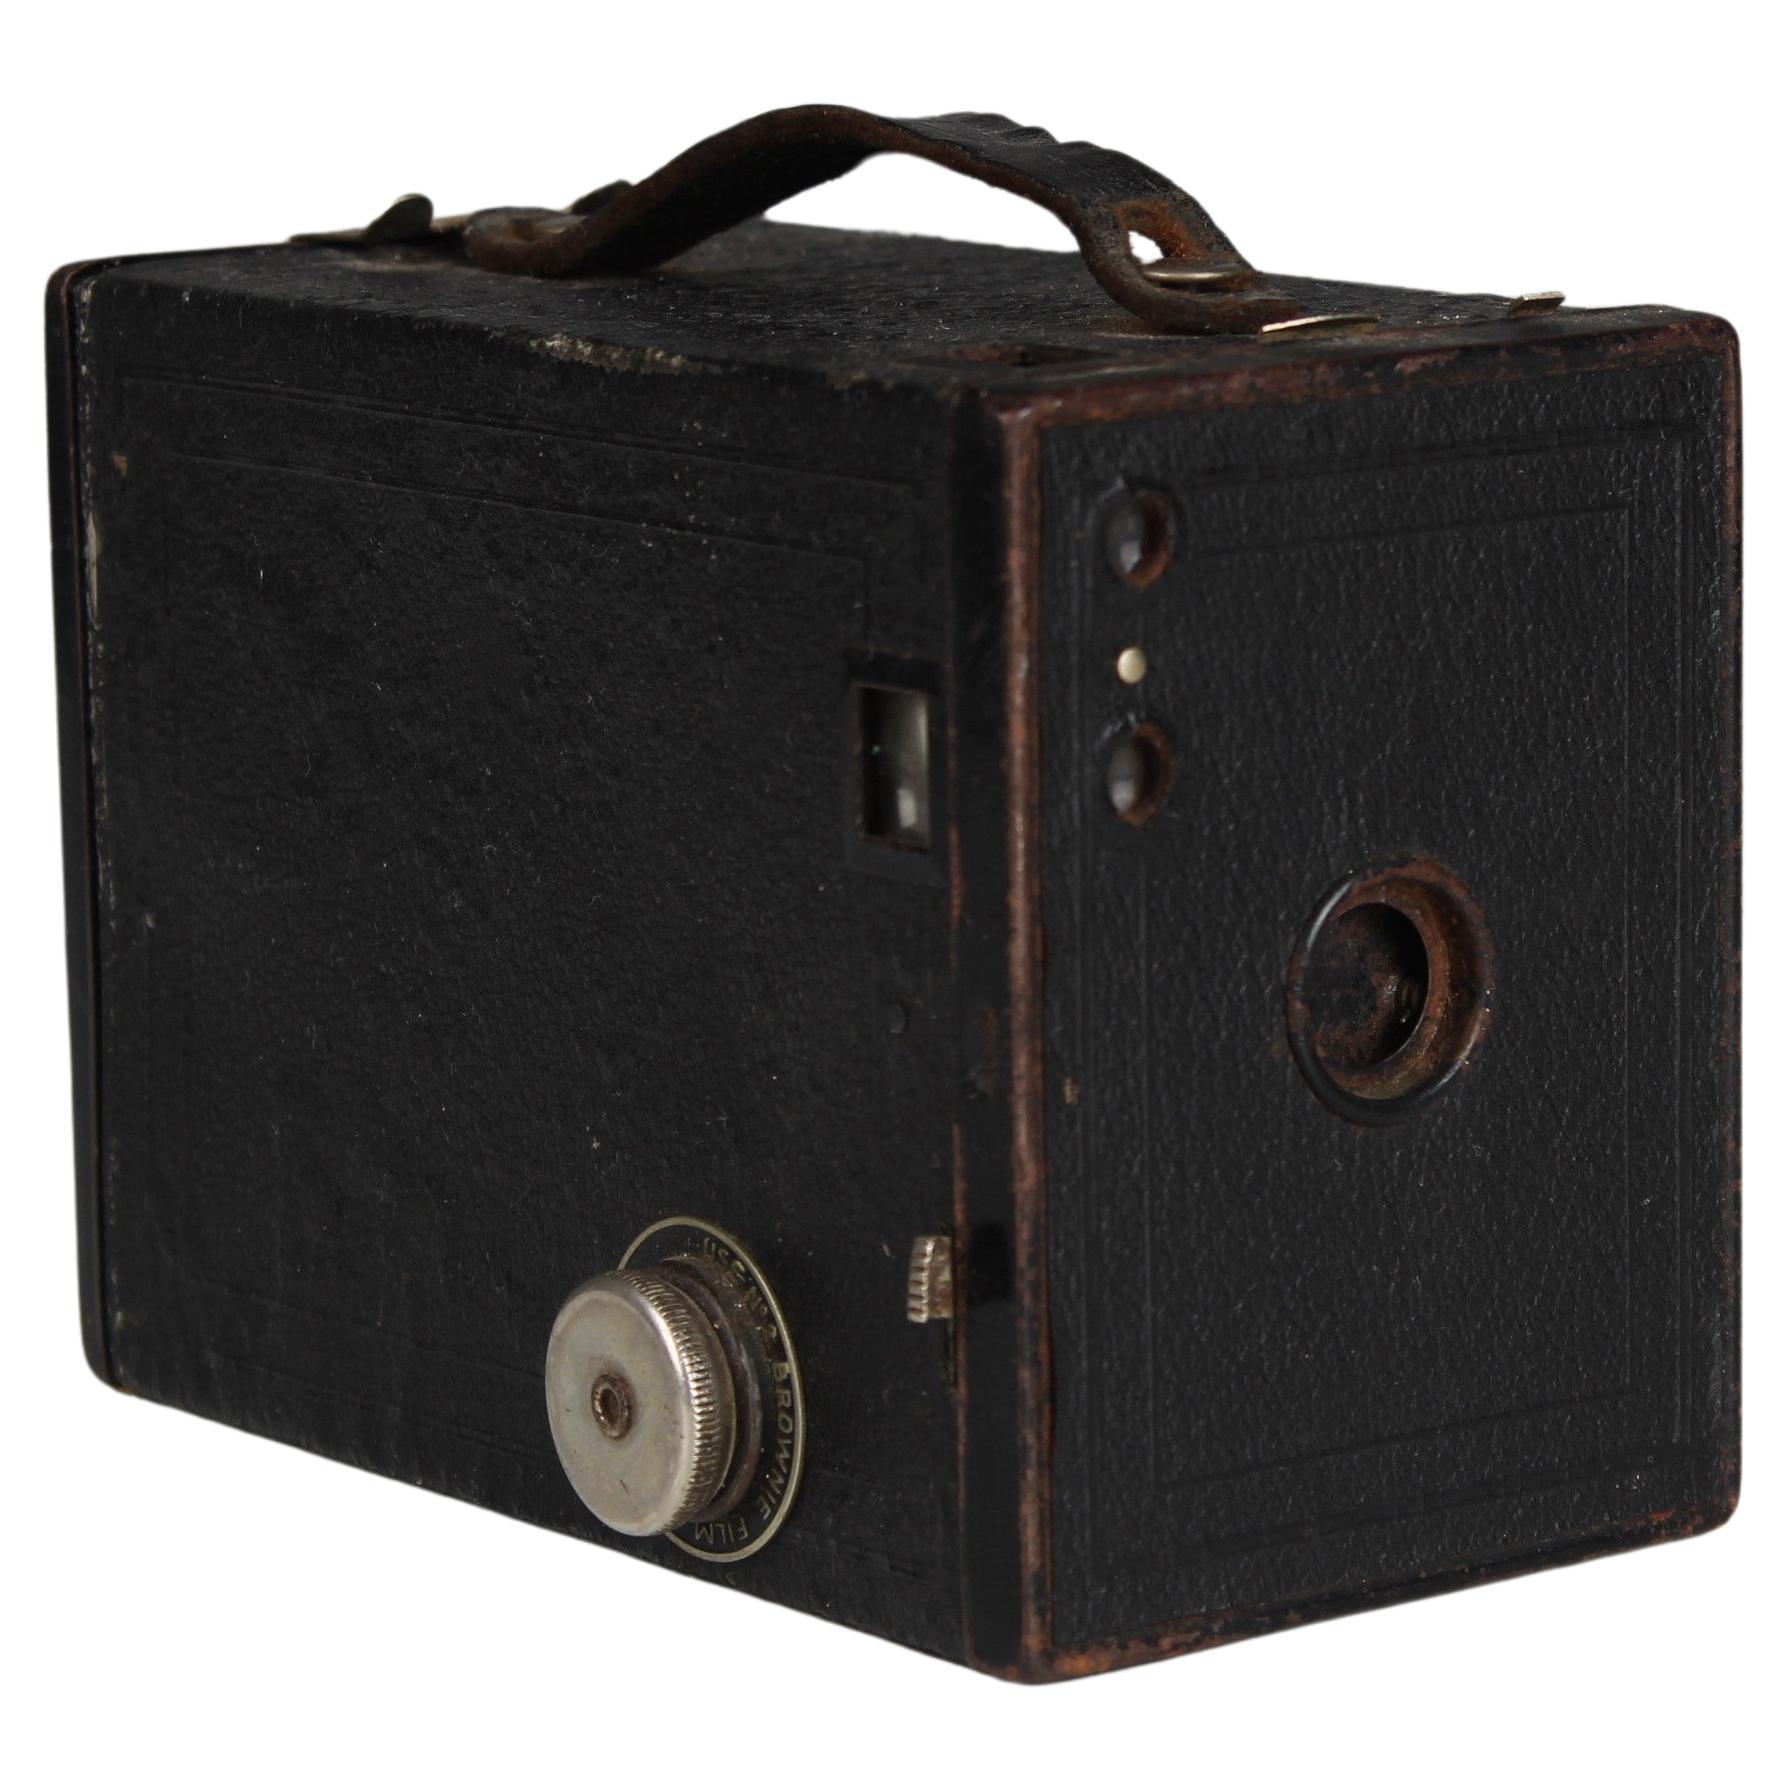 Vintage-Reisekamera, Box-Kamera Nr. 2 Brownie, 1930er Jahre